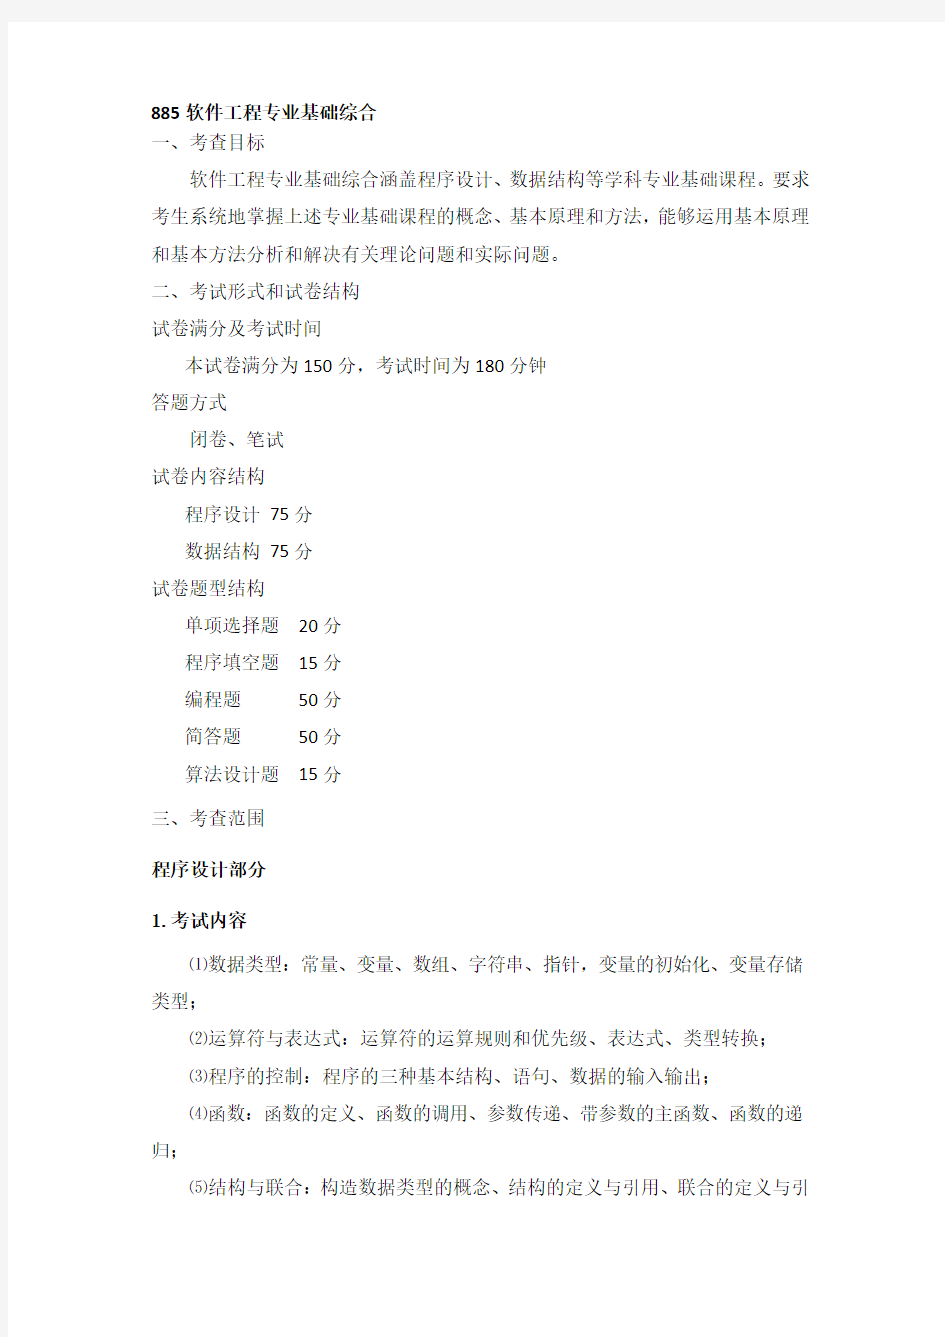 【2019年整理】北京理工大学885软件工程专业基础综合考试大纲(1)